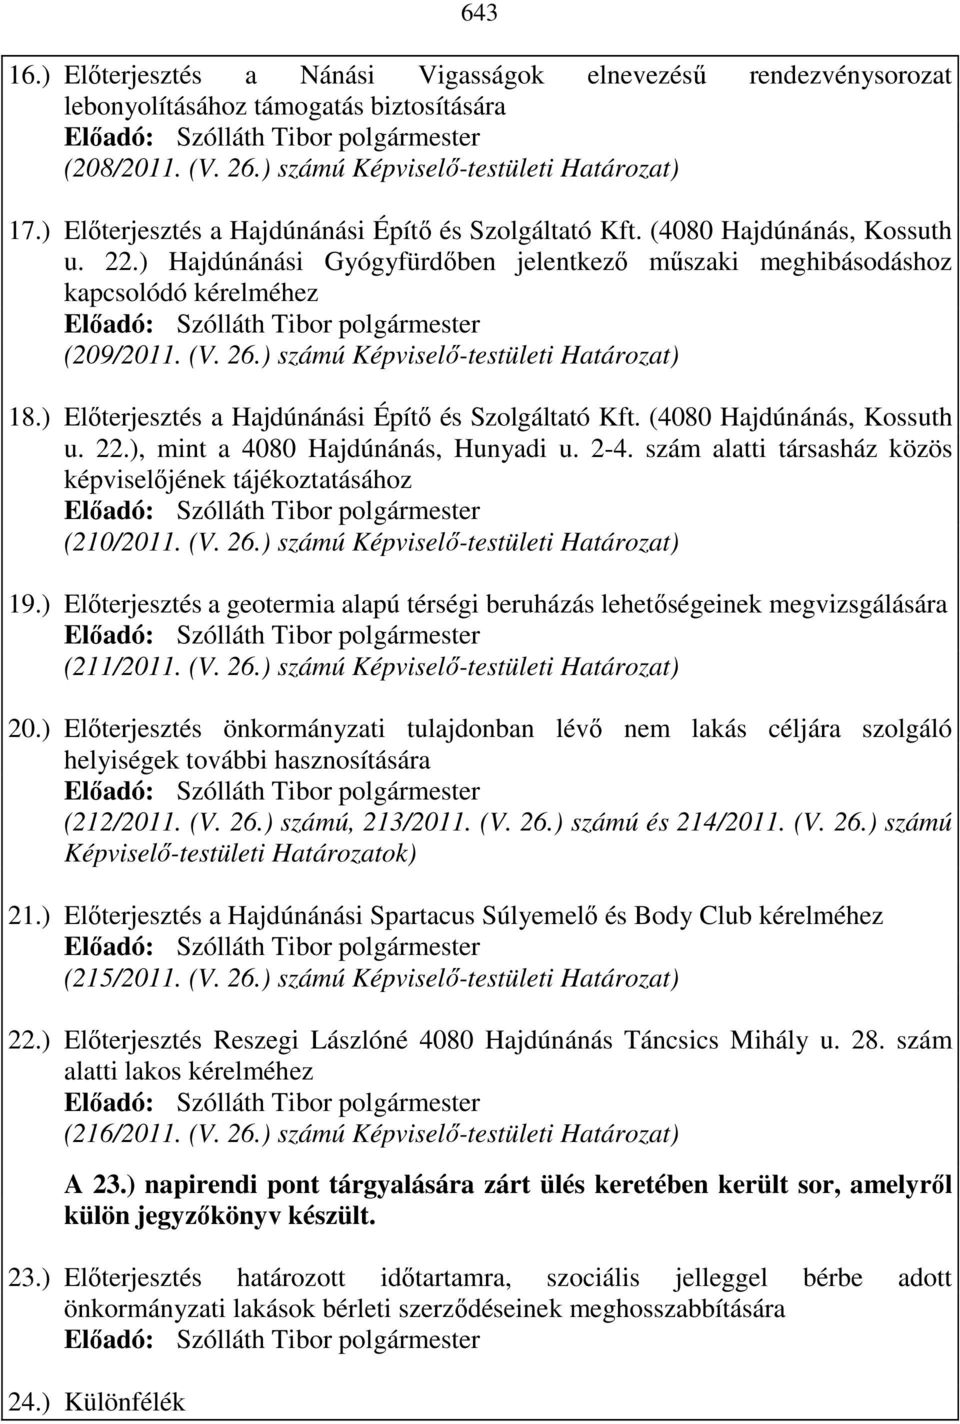 ) számú Képviselı-testületi Határozat) 18.) Elıterjesztés a Hajdúnánási Építı és Szolgáltató Kft. (4080 Hajdúnánás, Kossuth u. 22.), mint a 4080 Hajdúnánás, Hunyadi u. 2-4.